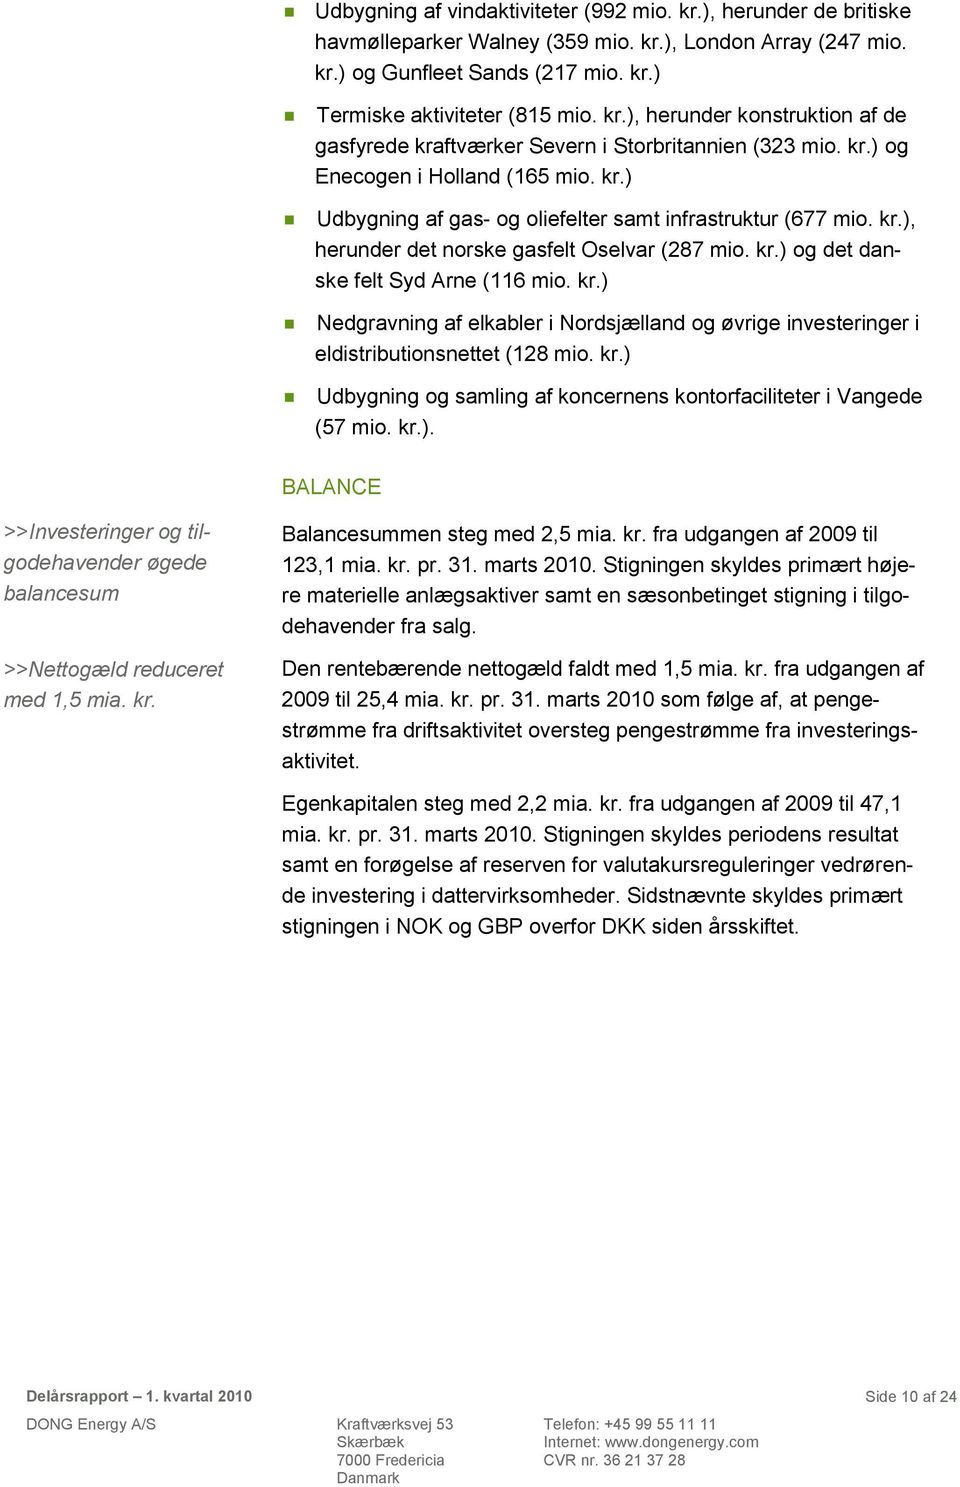 kr.) Nedgravning af elkabler i Nordsjælland og øvrige investeringer i eldistributionsnettet (128 mio. kr.) Udbygning og samling af koncernens kontorfaciliteter i Vangede (57 mio. kr.). BALANCE >>Investeringer og tilgodehavender øgede balancesum >>Nettogæld reduceret med 1,5 mia.